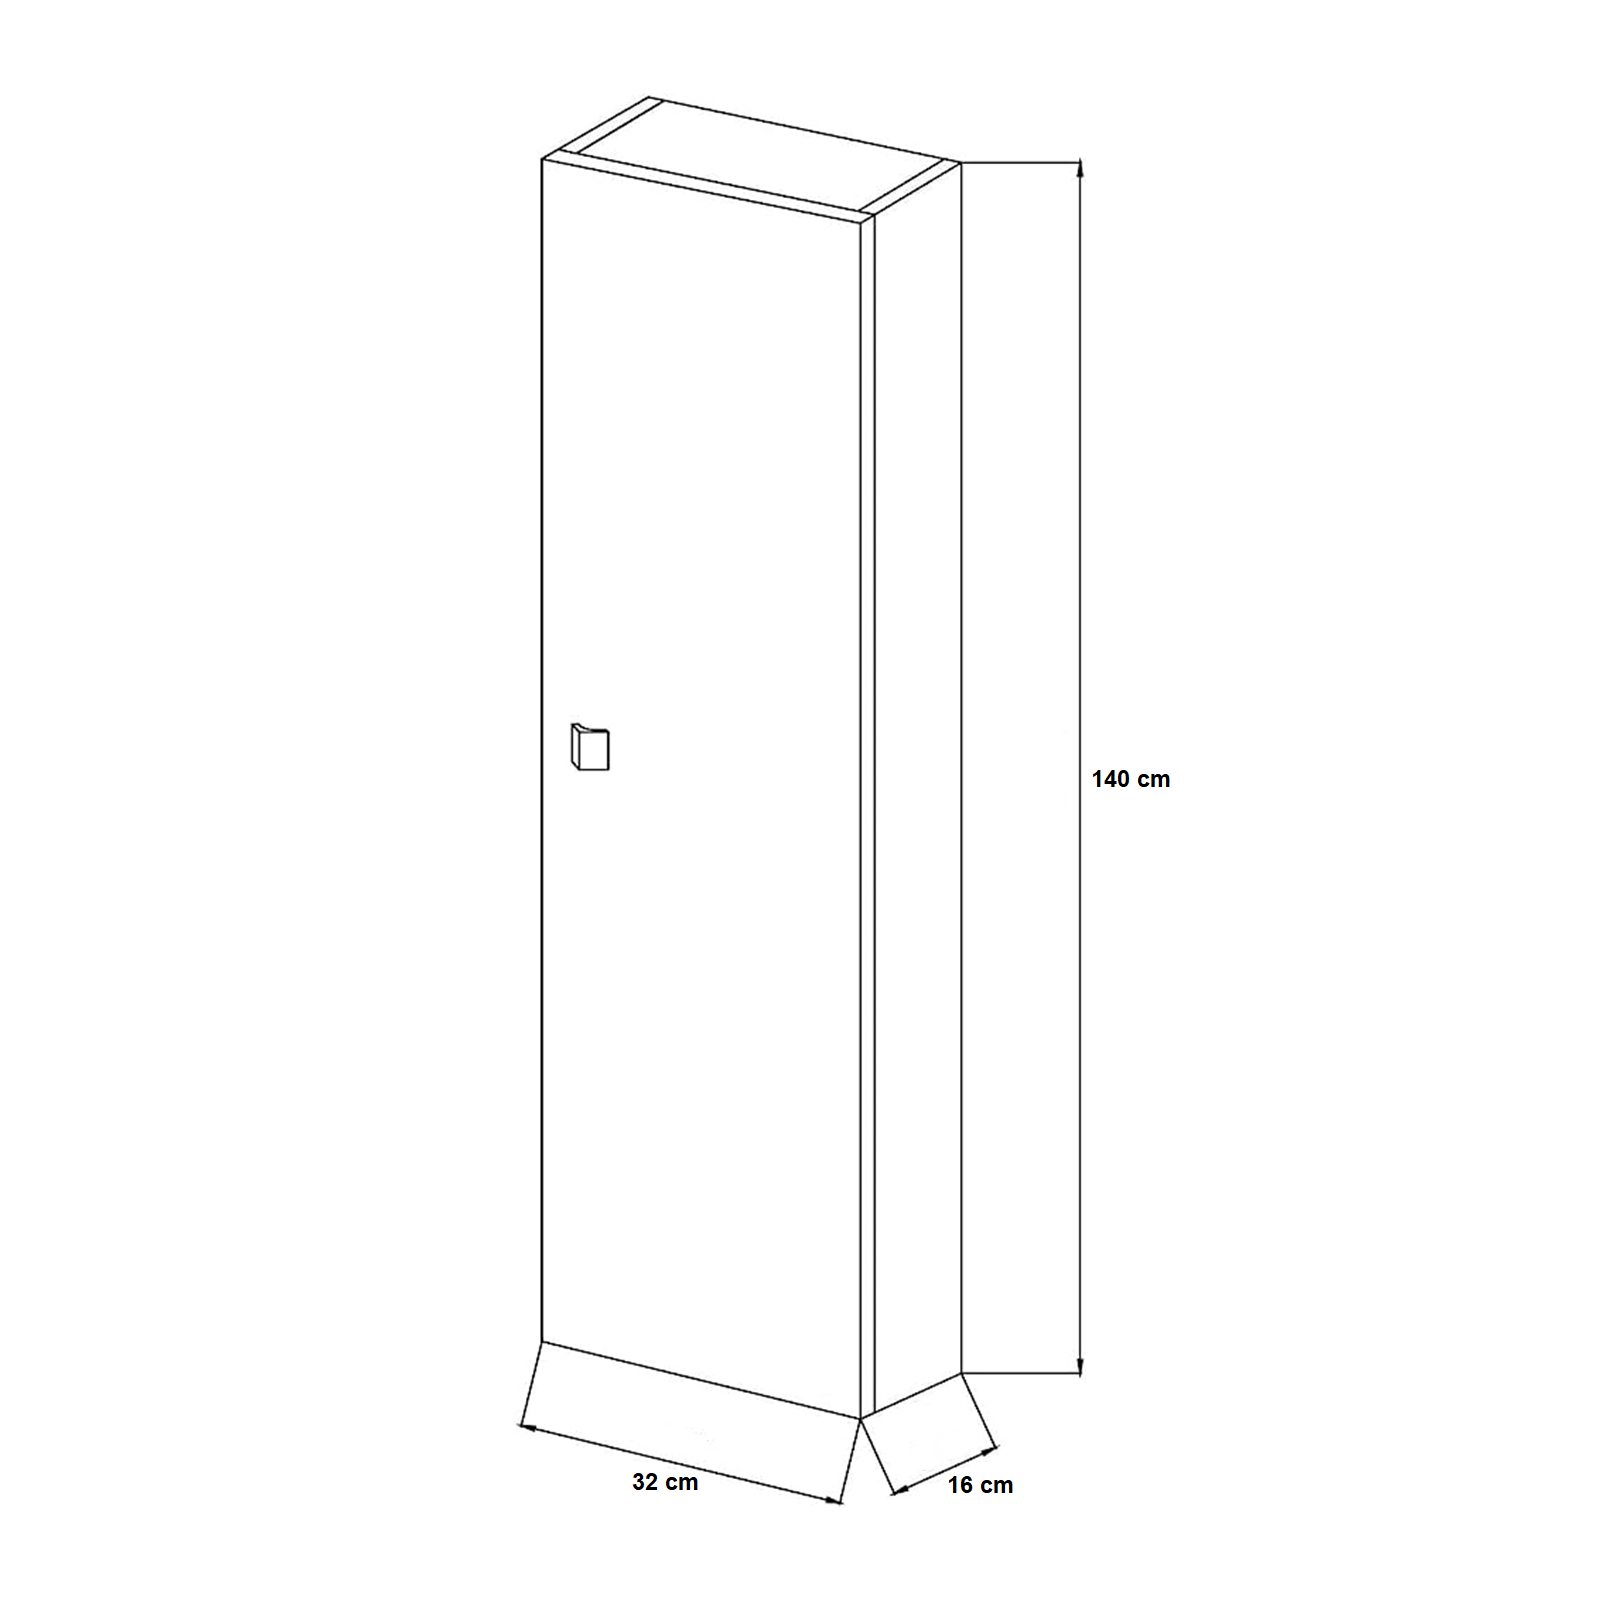 Columna de baño suspendida móvil Emma con 1 puerta de aglomerado lacado blanco 32x16 cm 140h